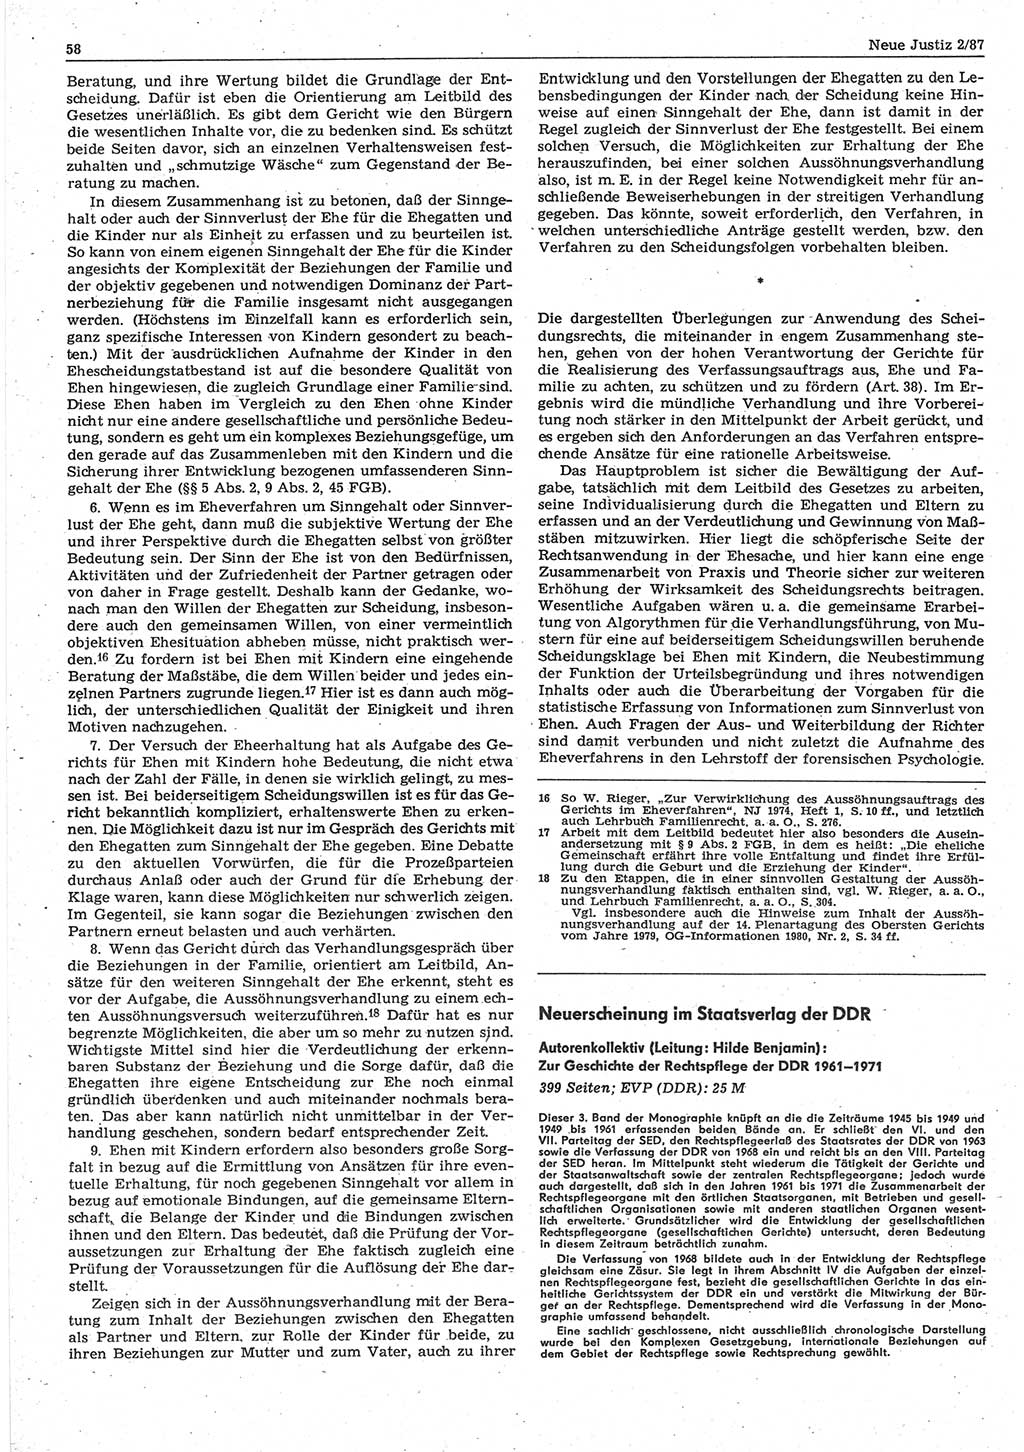 Neue Justiz (NJ), Zeitschrift für sozialistisches Recht und Gesetzlichkeit [Deutsche Demokratische Republik (DDR)], 41. Jahrgang 1987, Seite 58 (NJ DDR 1987, S. 58)